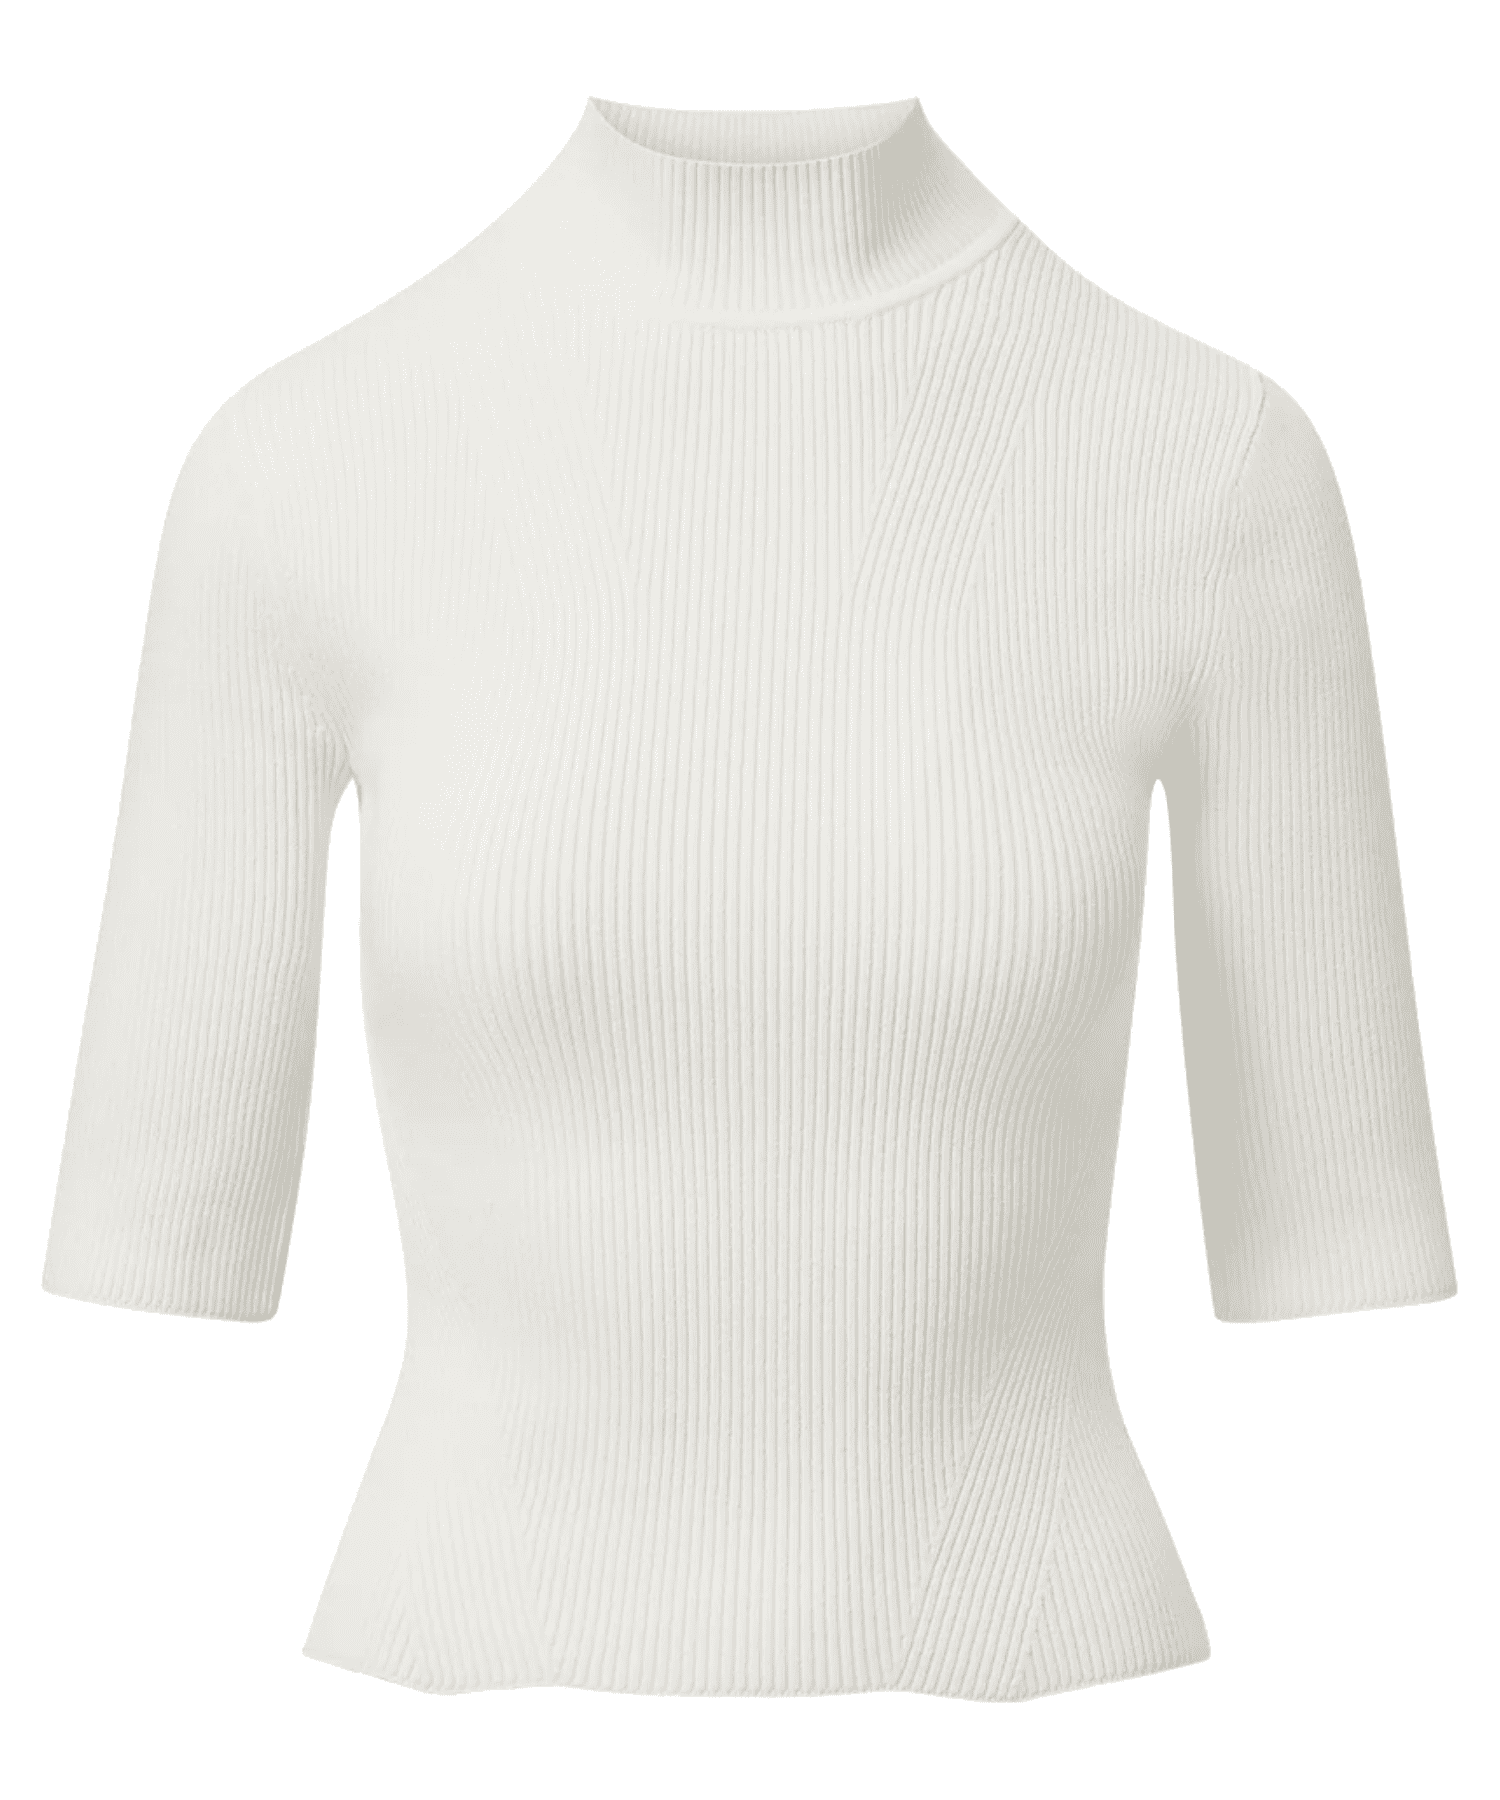 Galvan mute V-neck sweatshirt - White